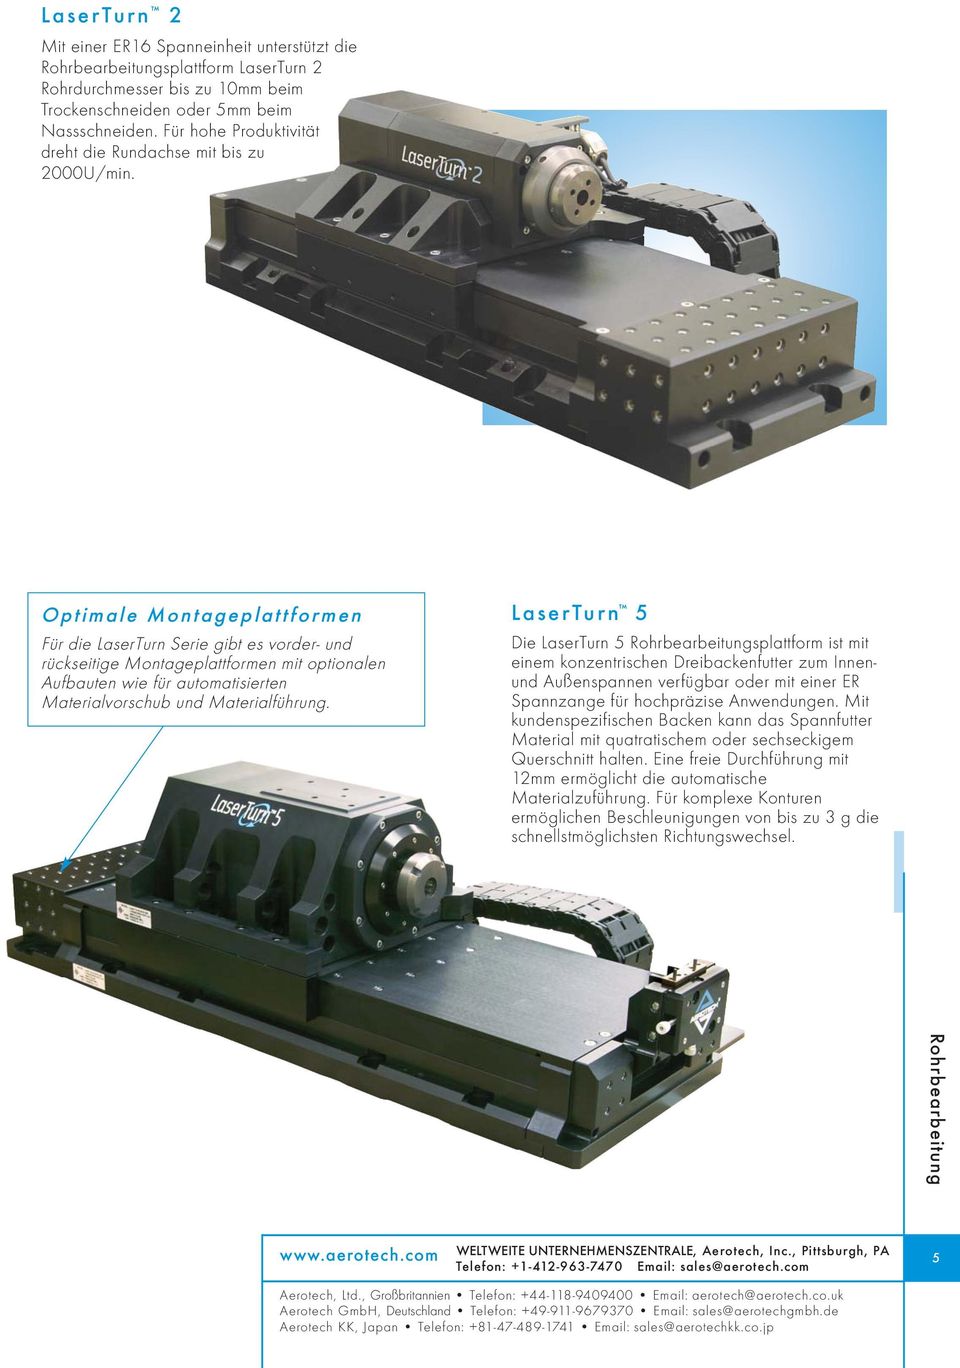 Optimale Montageplattformen Für die LaserTurn Serie gibt es vorder- und rückseitige Montageplattformen mit optionalen Aufbauten wie für automatisierten Materialvorschub und Materialführung.